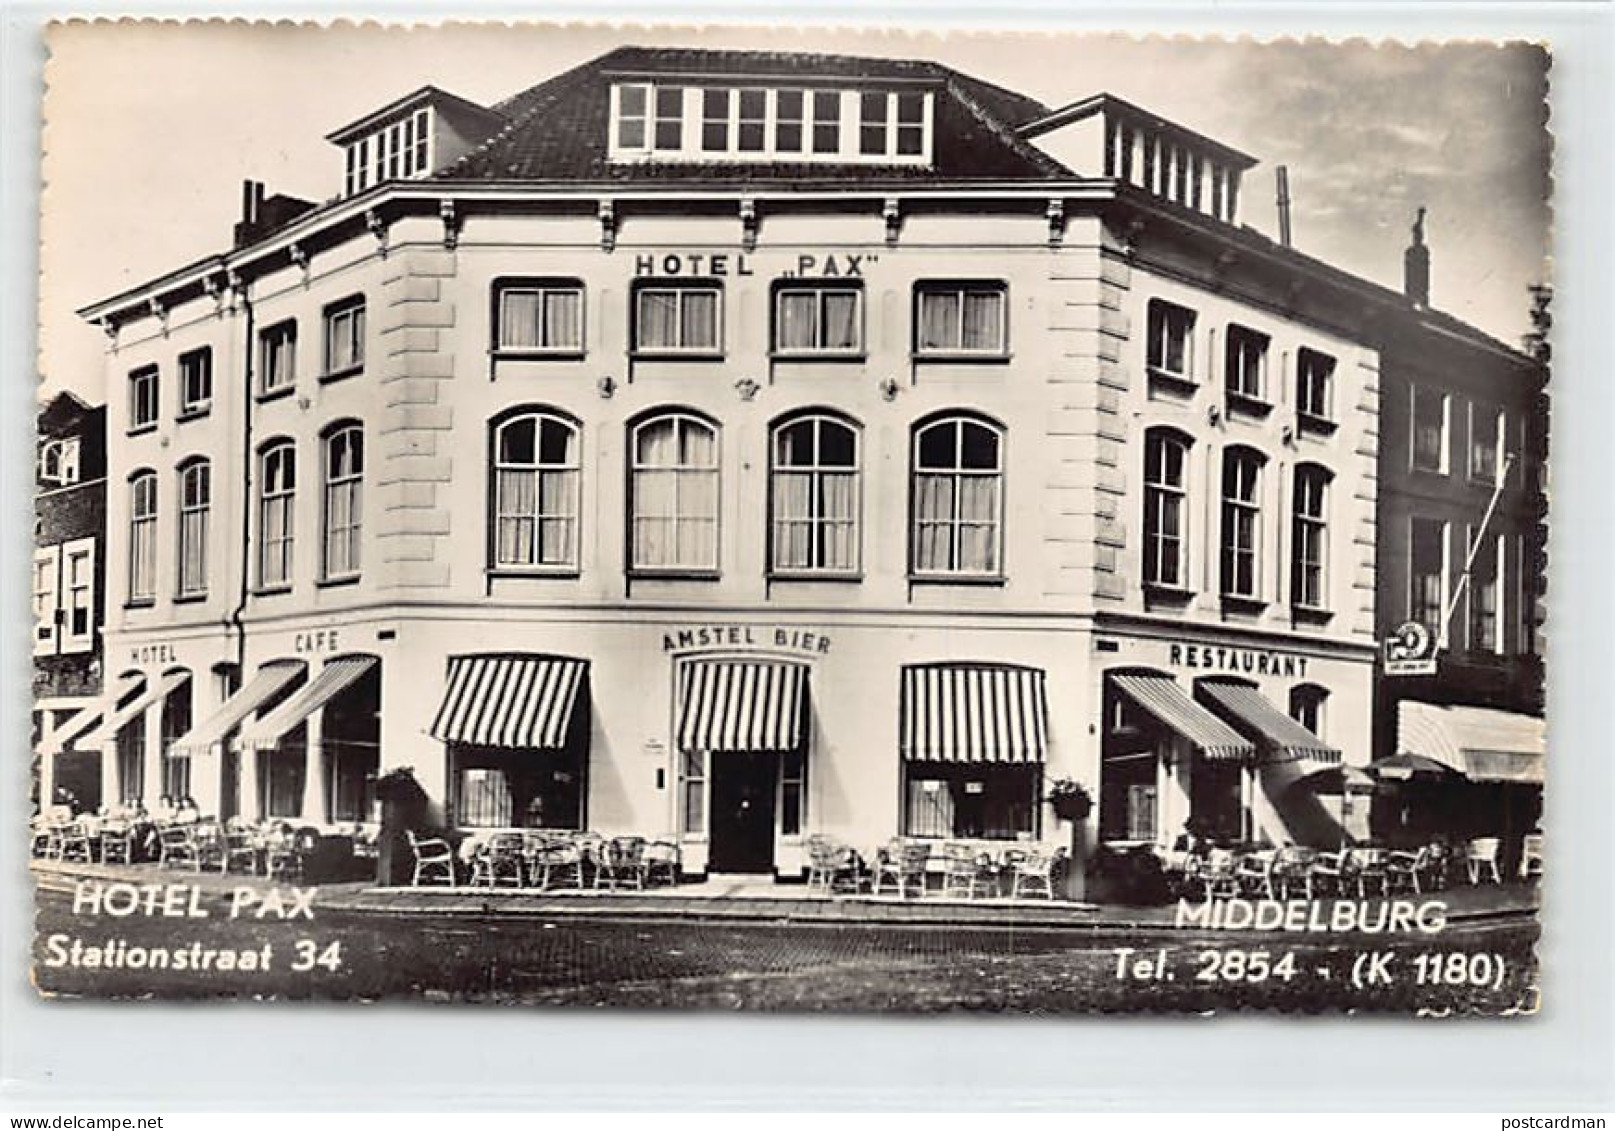 MIDDELBURG - Hotel Pax, Stationstraat 34 - Middelburg